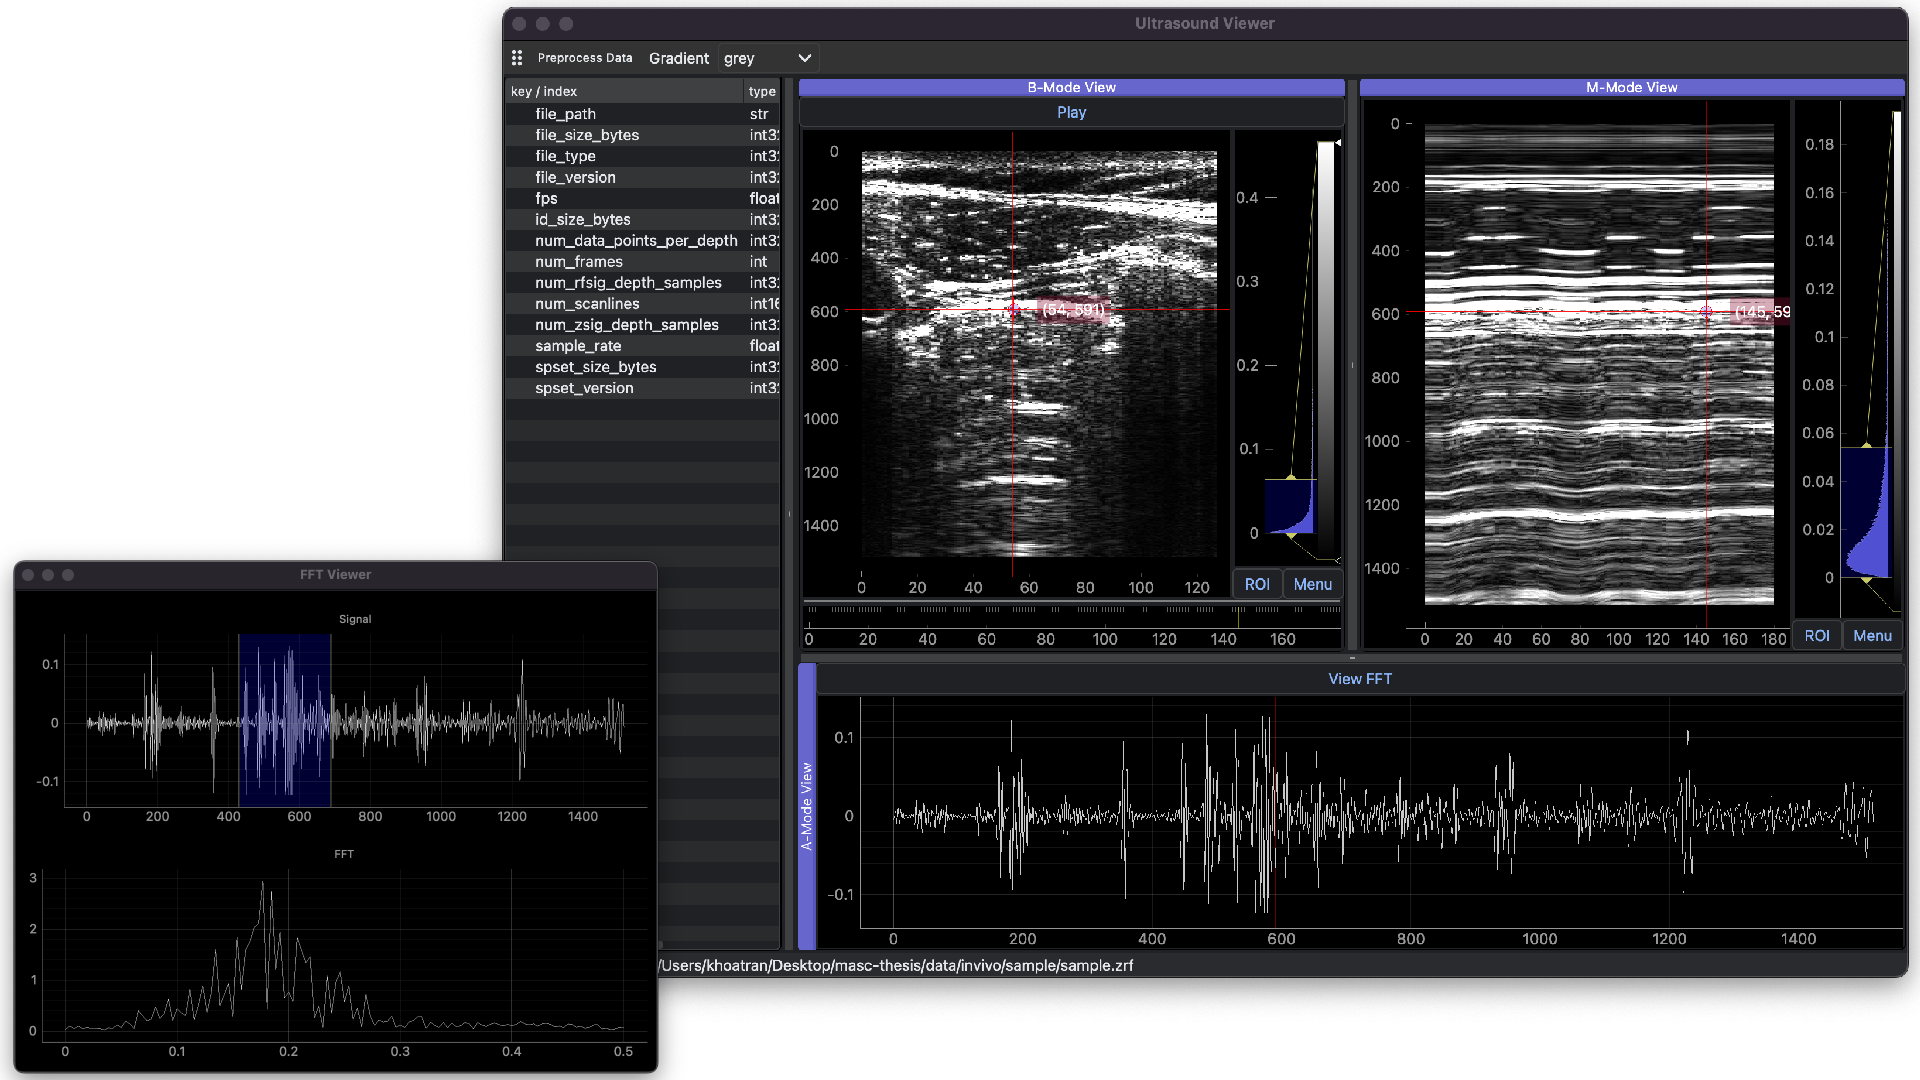 Ultrasound data analysis GUI desktop application